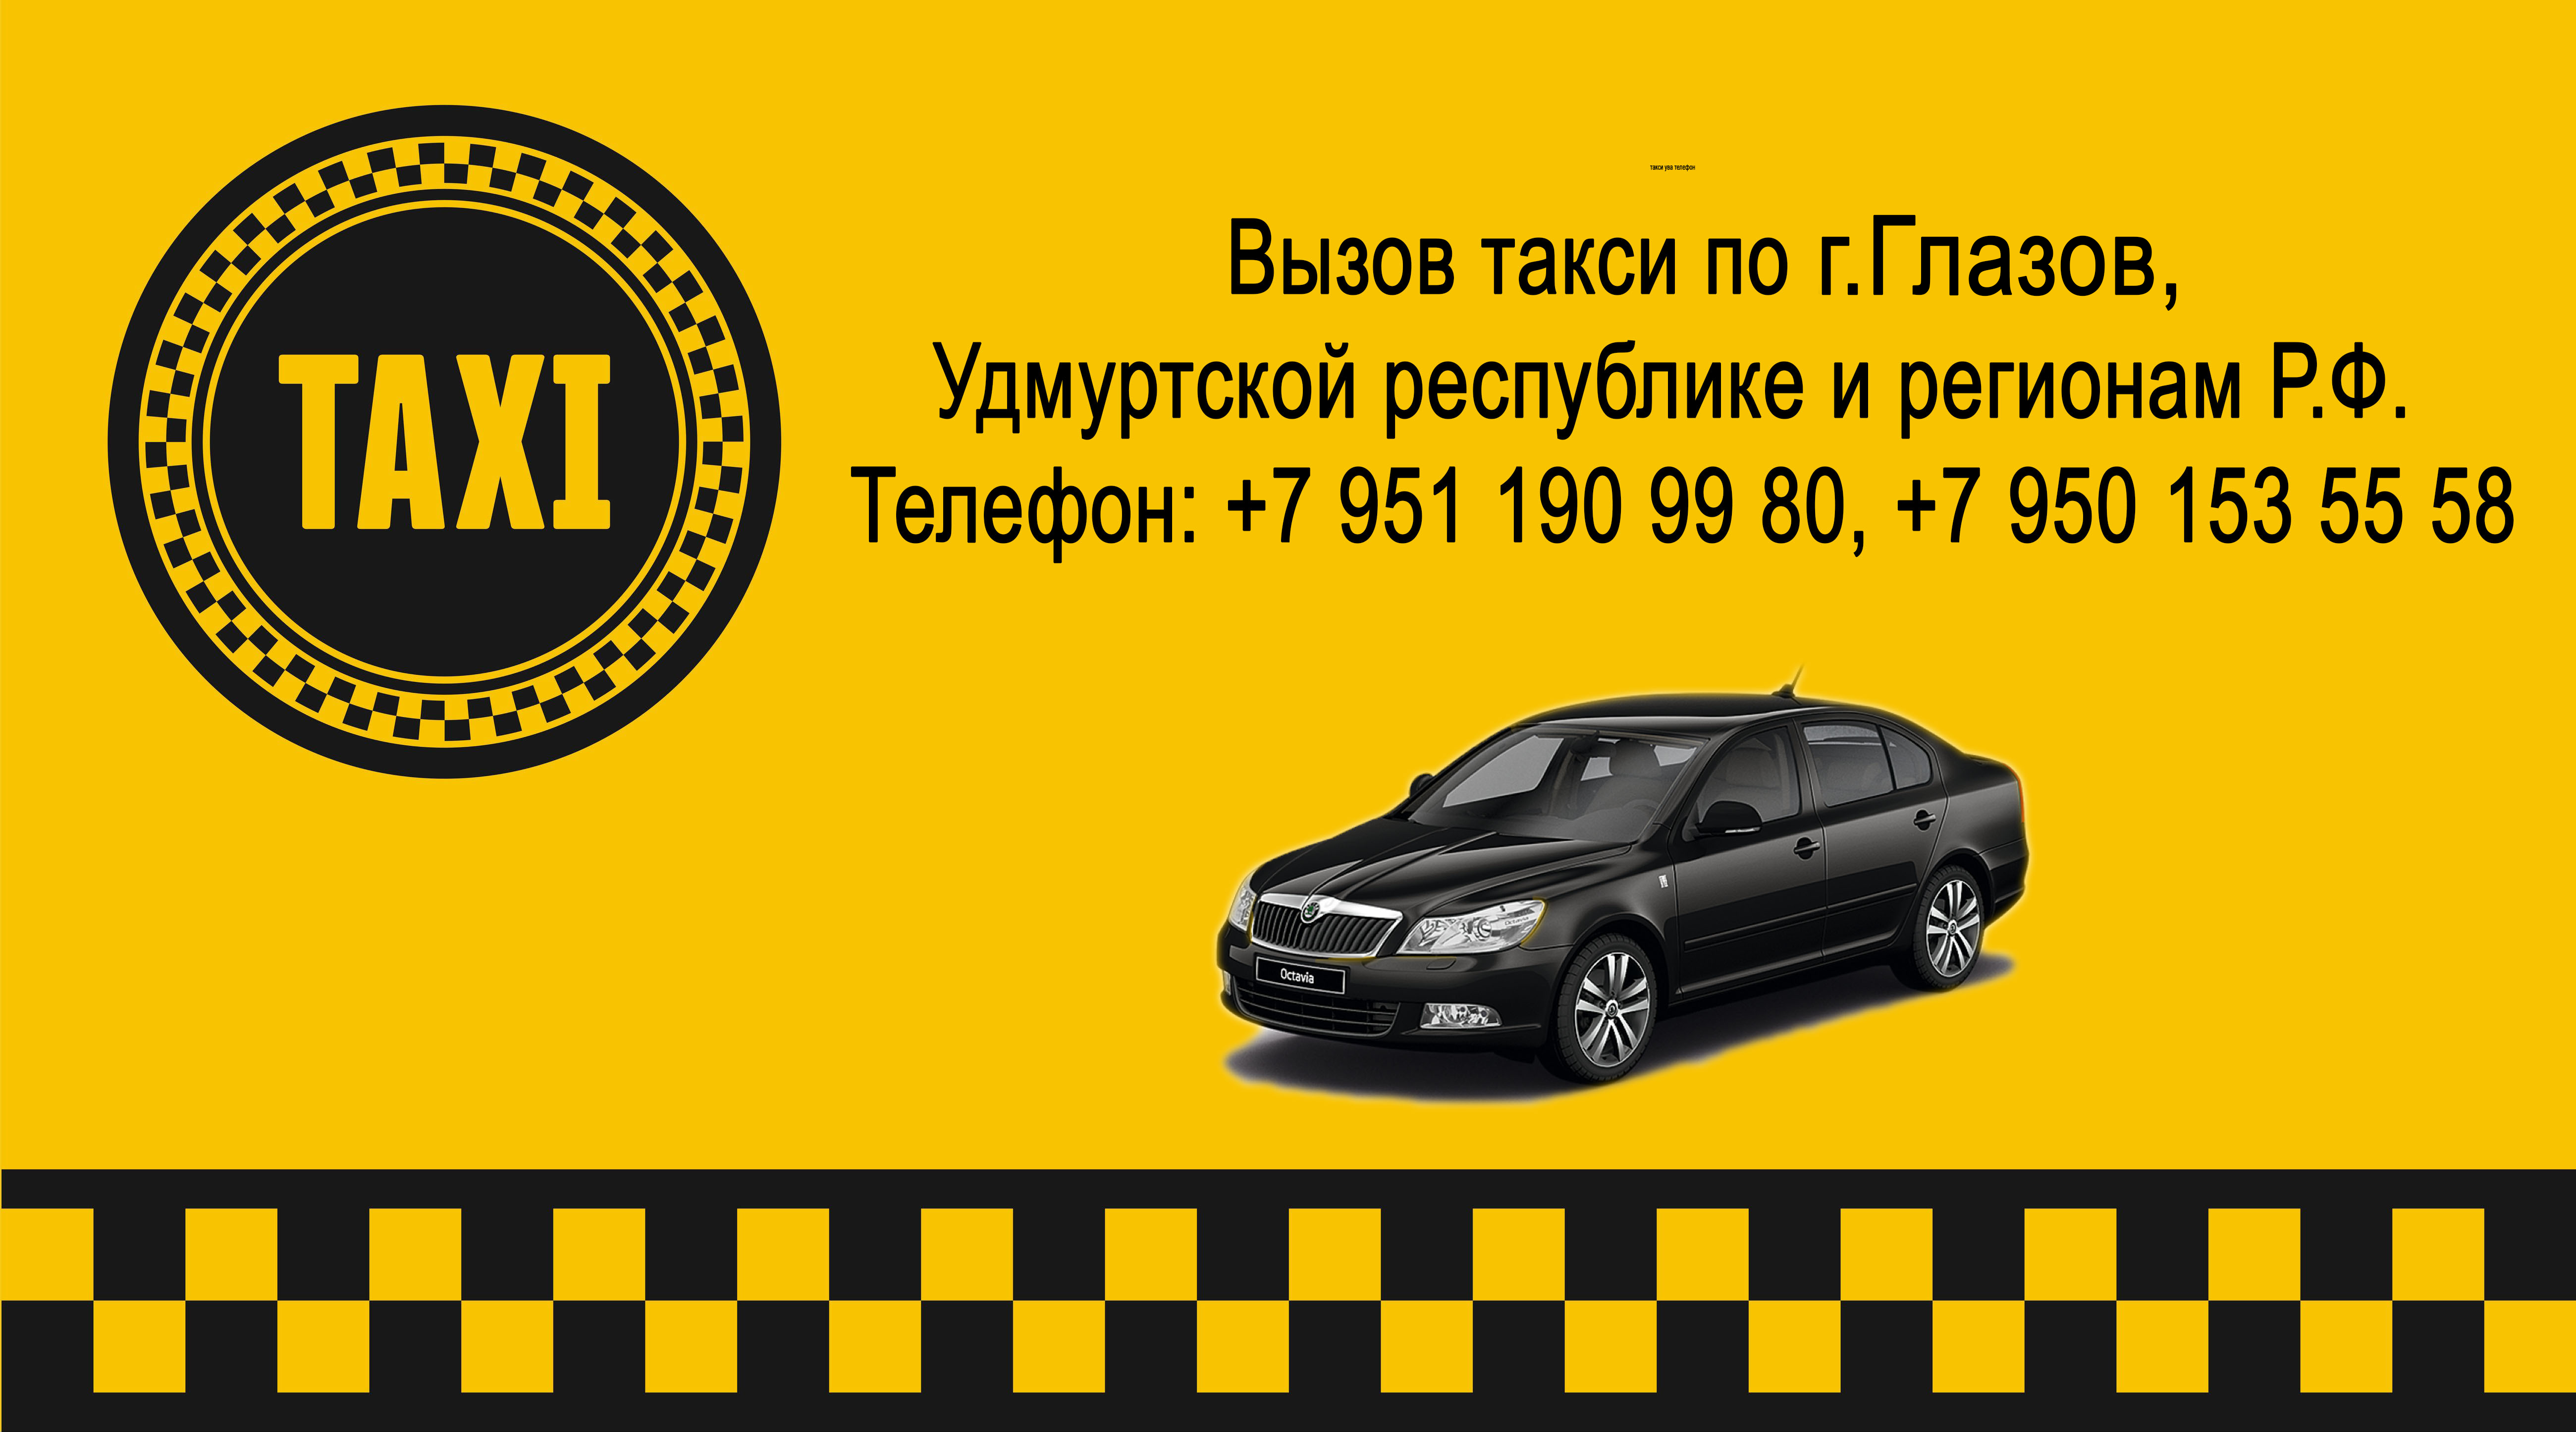 Вызвать такси в пензе. Номер такси. Номера таксистов. Такси Ува. Такси номер такси.